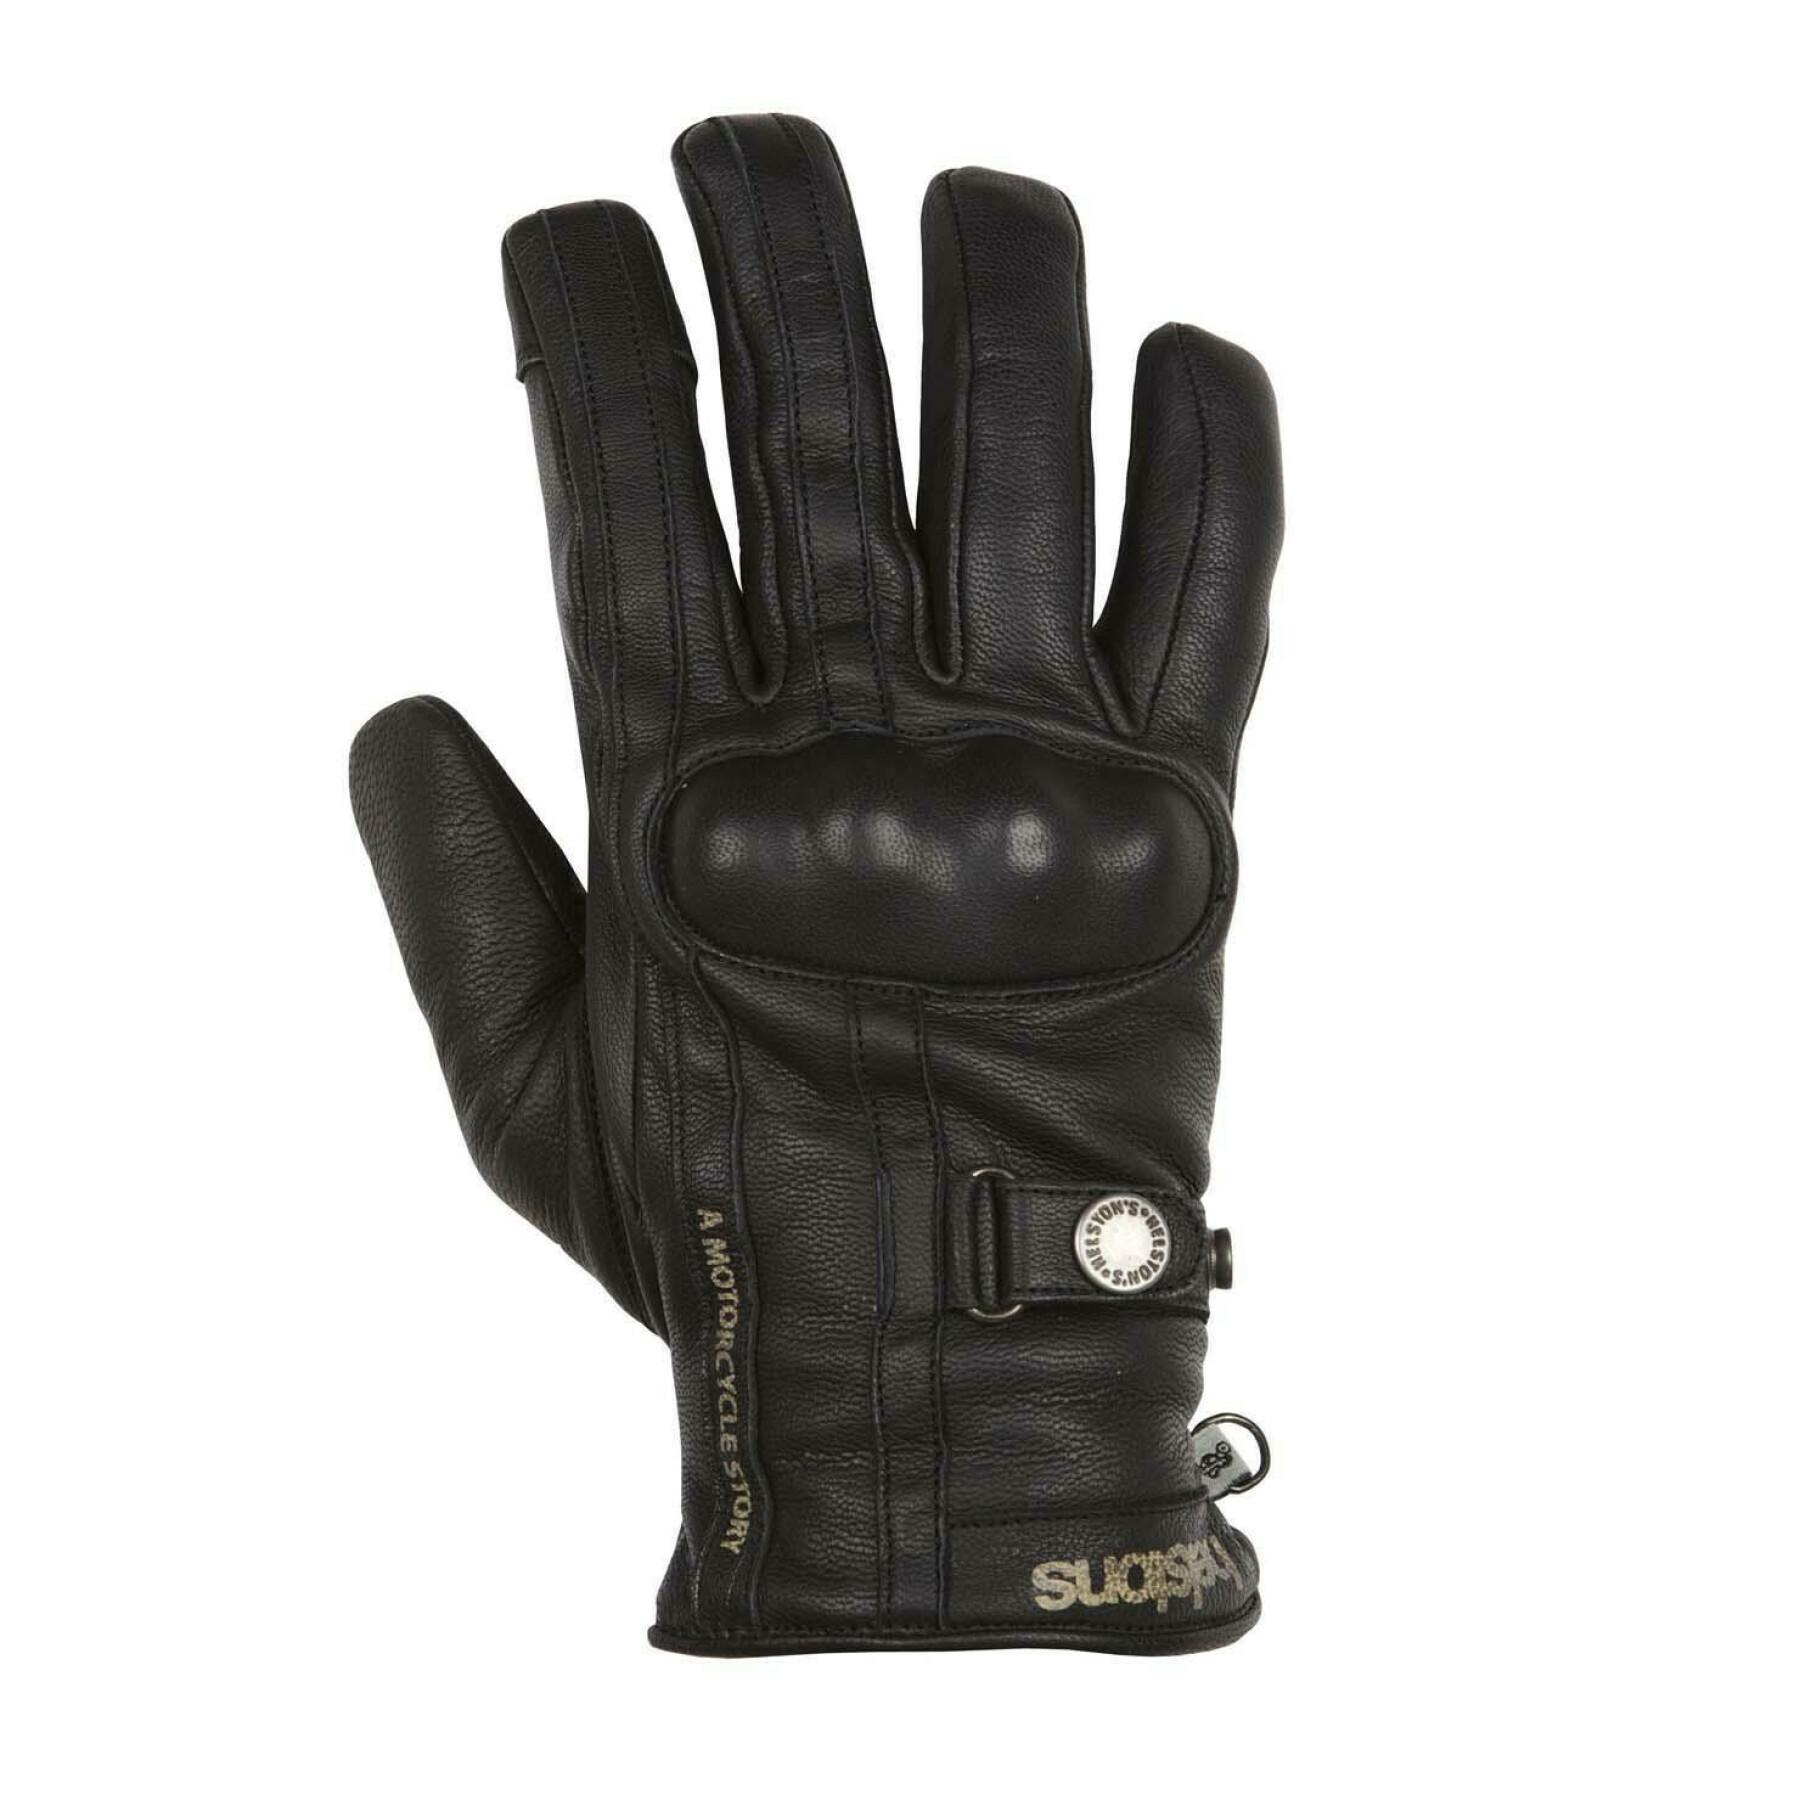 Winter leather gloves Helstons burton